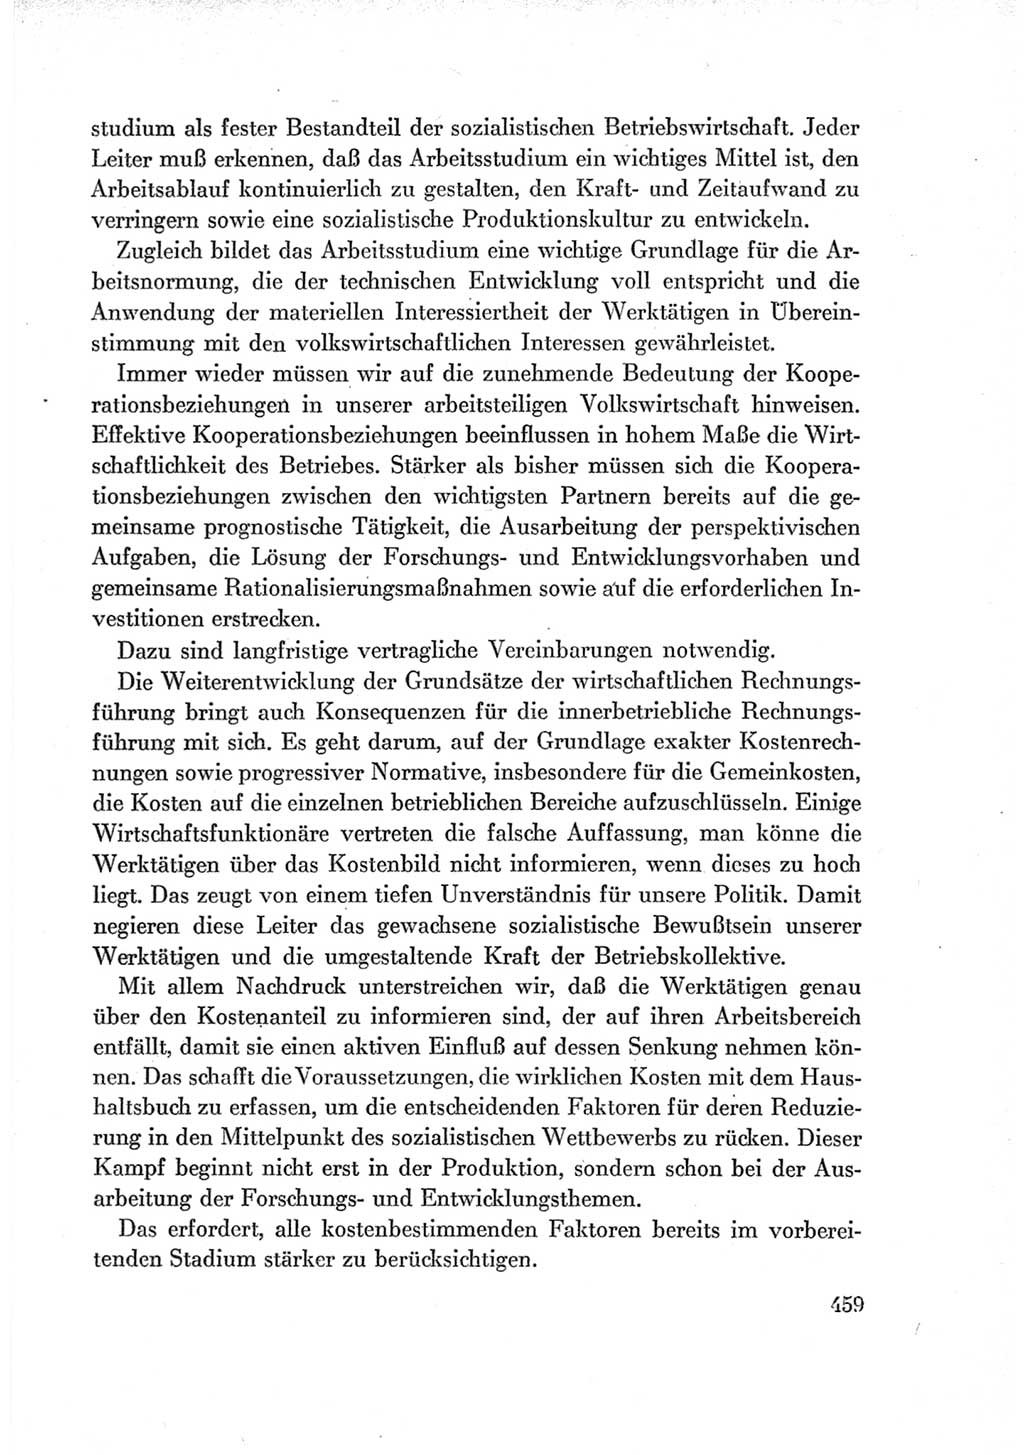 Protokoll der Verhandlungen des Ⅶ. Parteitages der Sozialistischen Einheitspartei Deutschlands (SED) [Deutsche Demokratische Republik (DDR)] 1967, Band Ⅰ, Seite 459 (Prot. Verh. Ⅶ. PT SED DDR 1967, Bd. Ⅰ, S. 459)